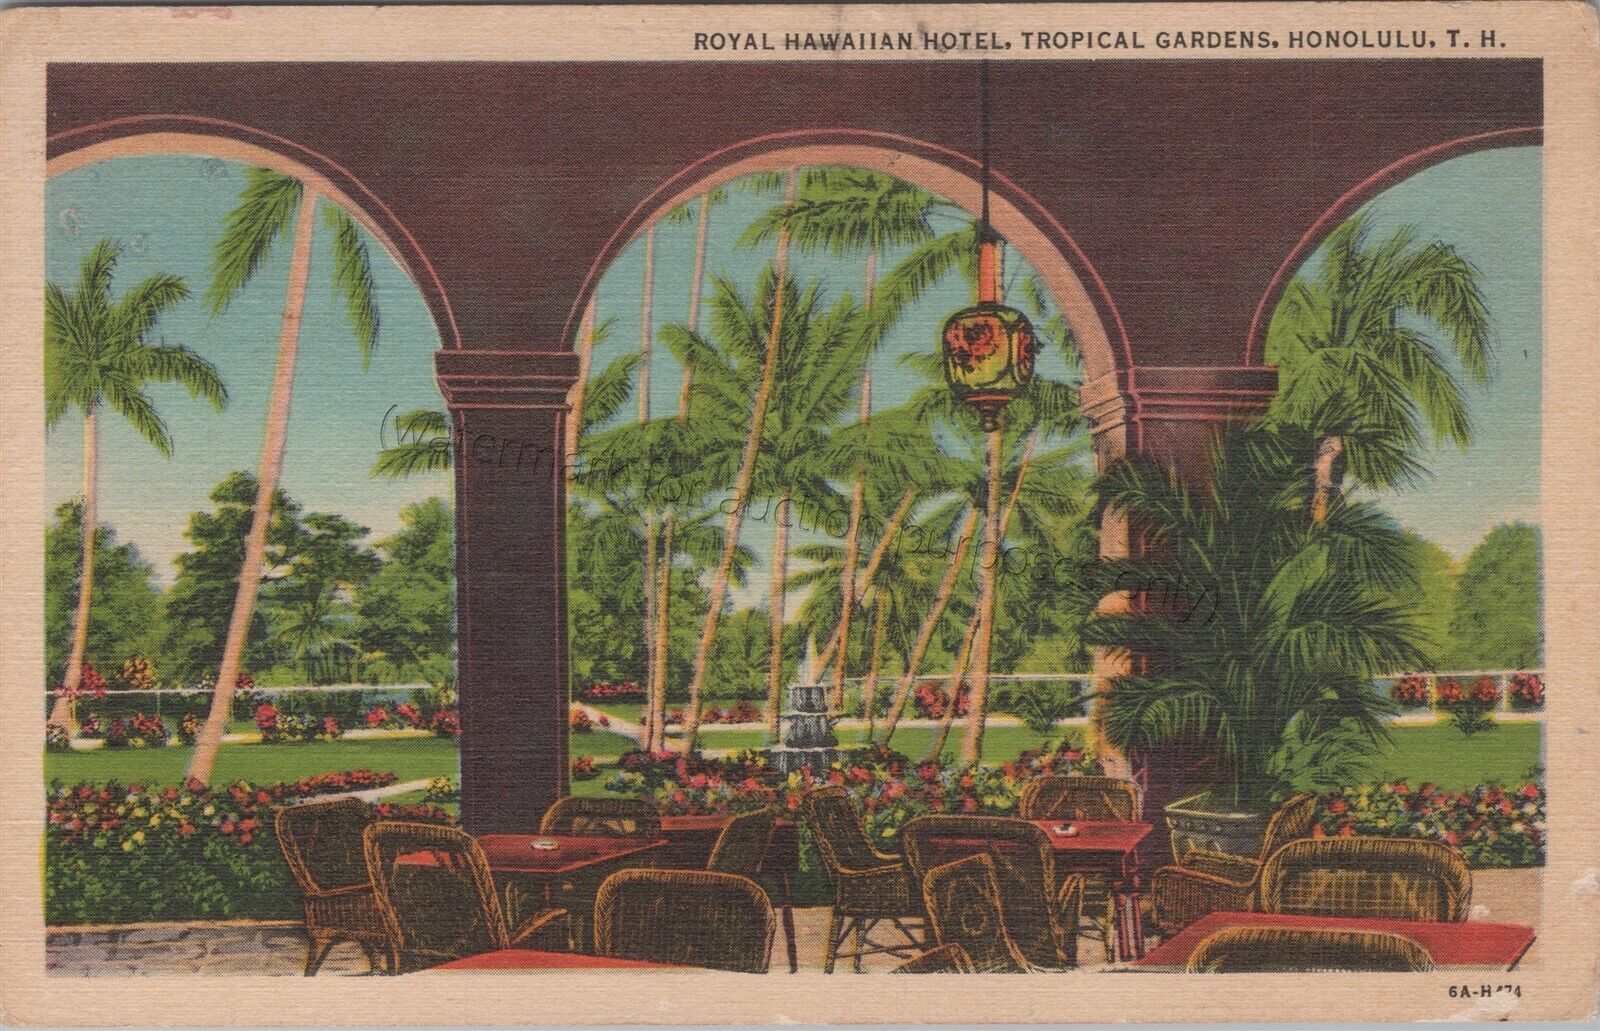 Honolulu, HI: Royal Hawaiian Hotel, Tropical Gardens - Vintage Hawaii Postcard